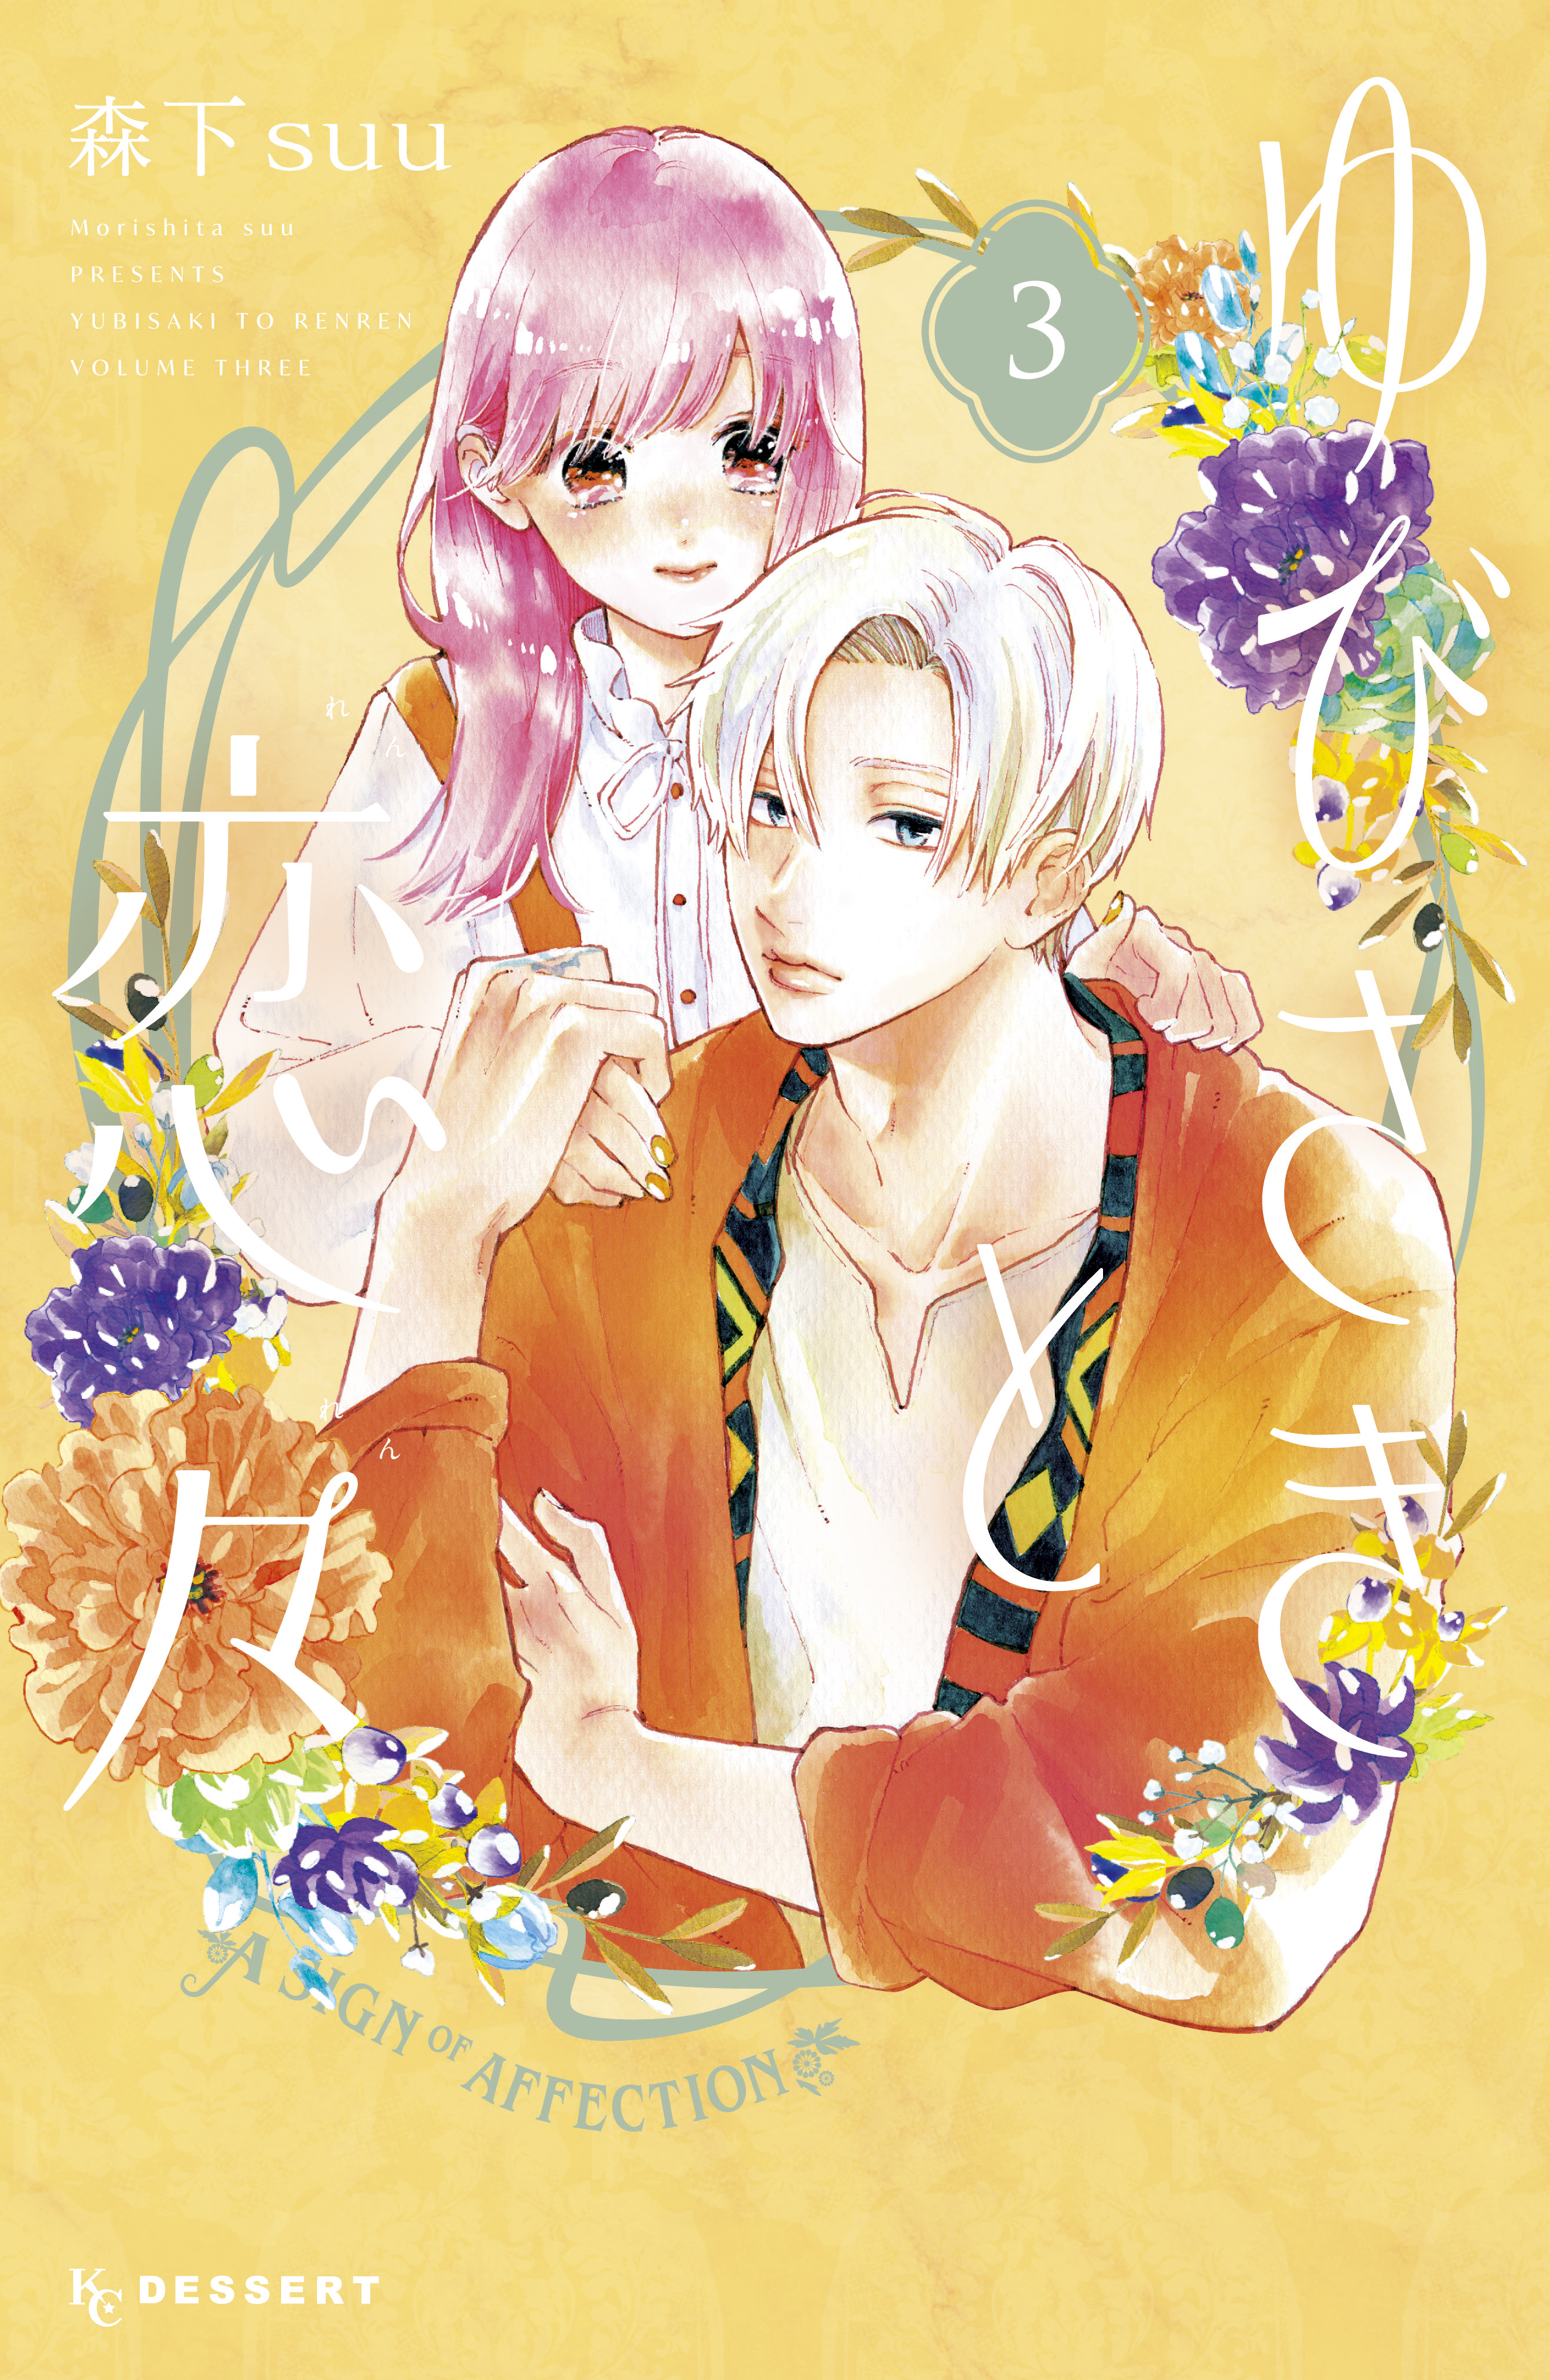 ボード「Part 1 - Recommended Shoujo/Romance Manga/hwa/hua」のピン